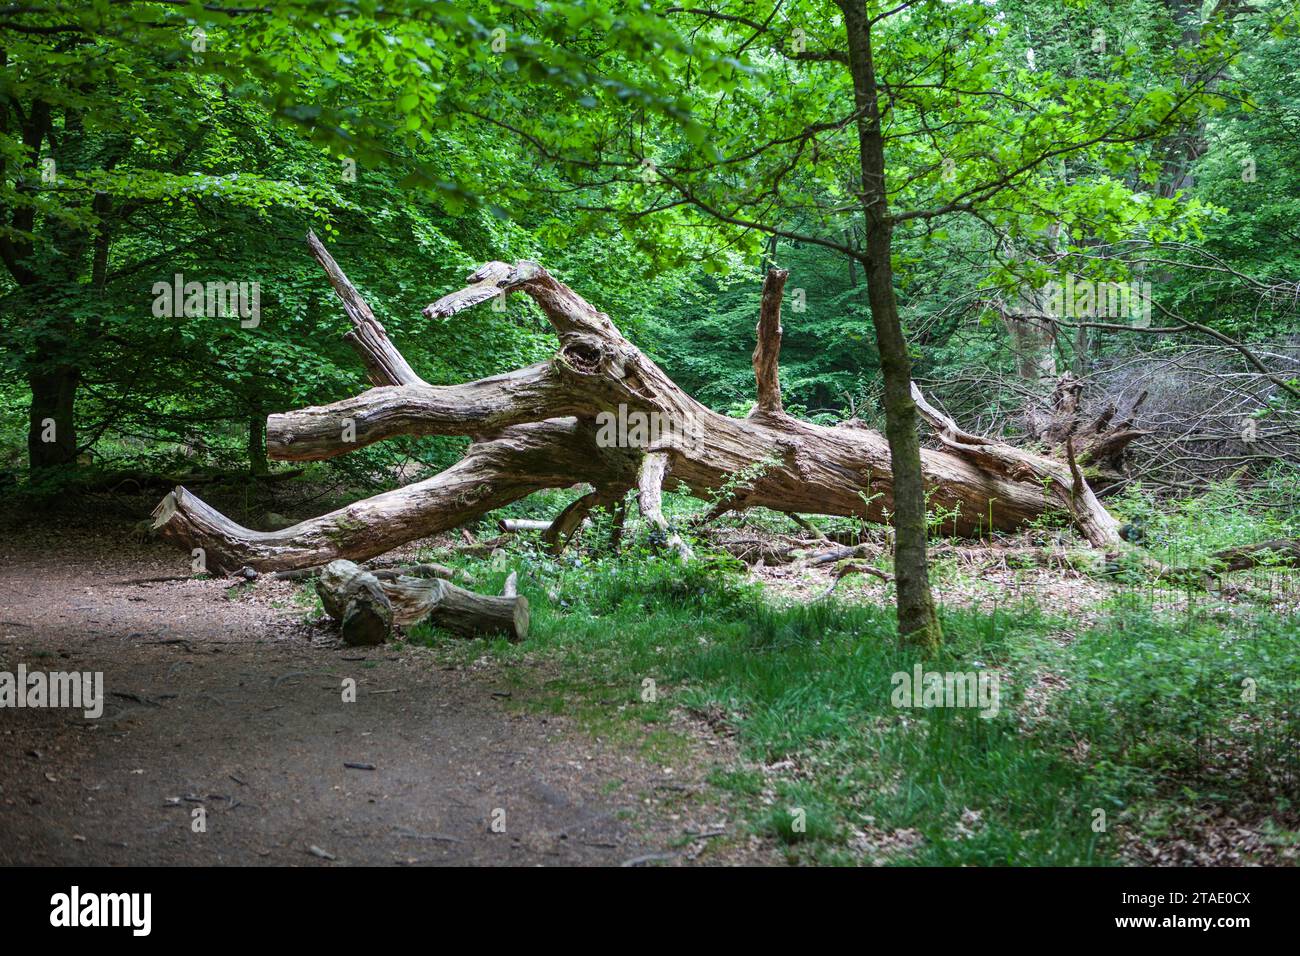 Alte verfaulte Eiche, sieht aus wie ein Reptil, Urwald Urwald Sababurg, Hofgeismar, Weserbergland, Hessen, Deutschland Stockfoto